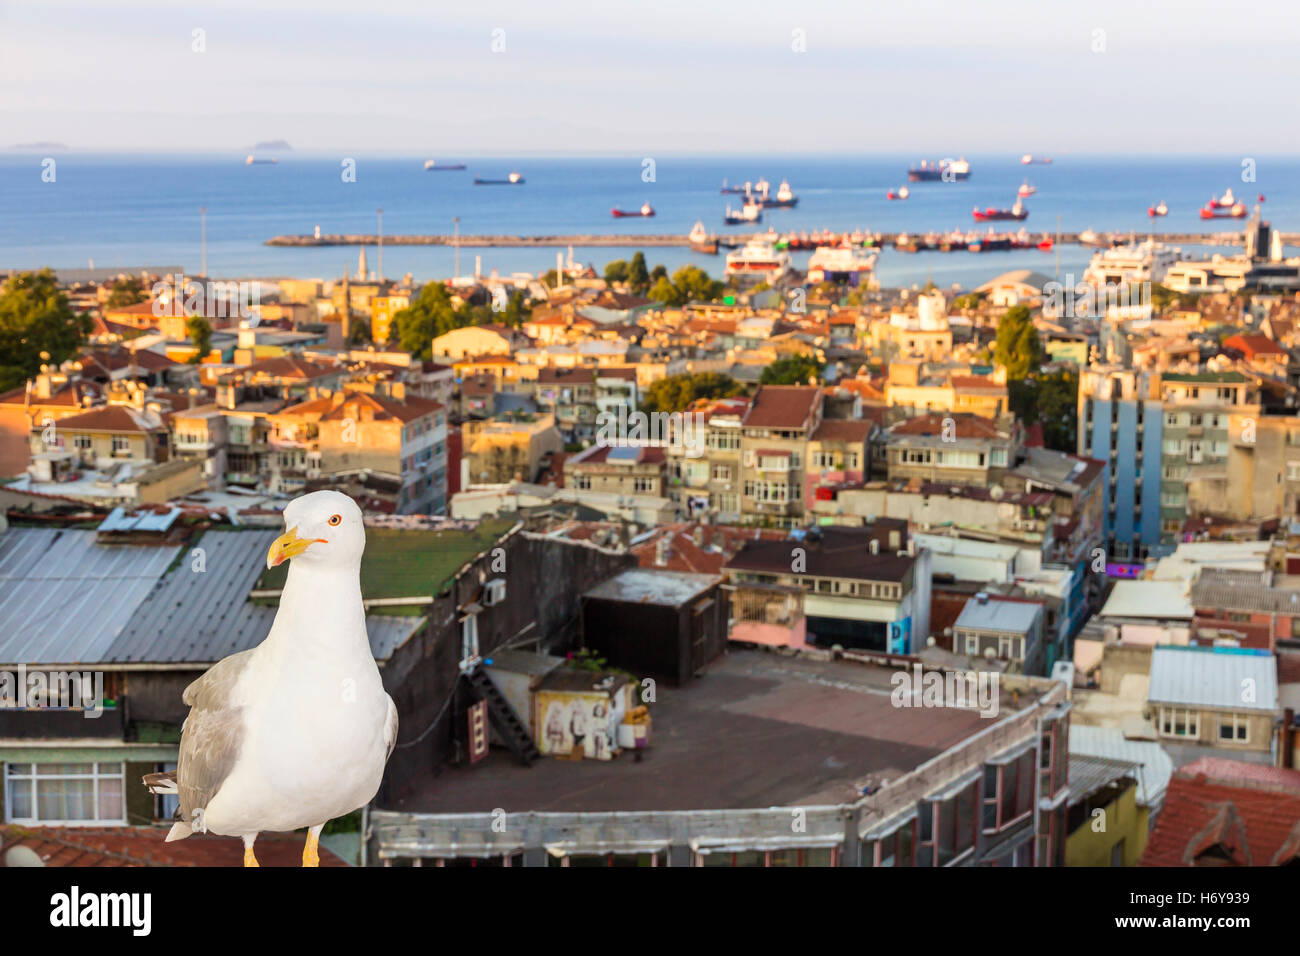 Sehenswürdigkeiten von Istanbul. Ansicht der Stadt. Straßen, Sehenswürdigkeiten, Hotels und Marmara-Meer. Stockfoto